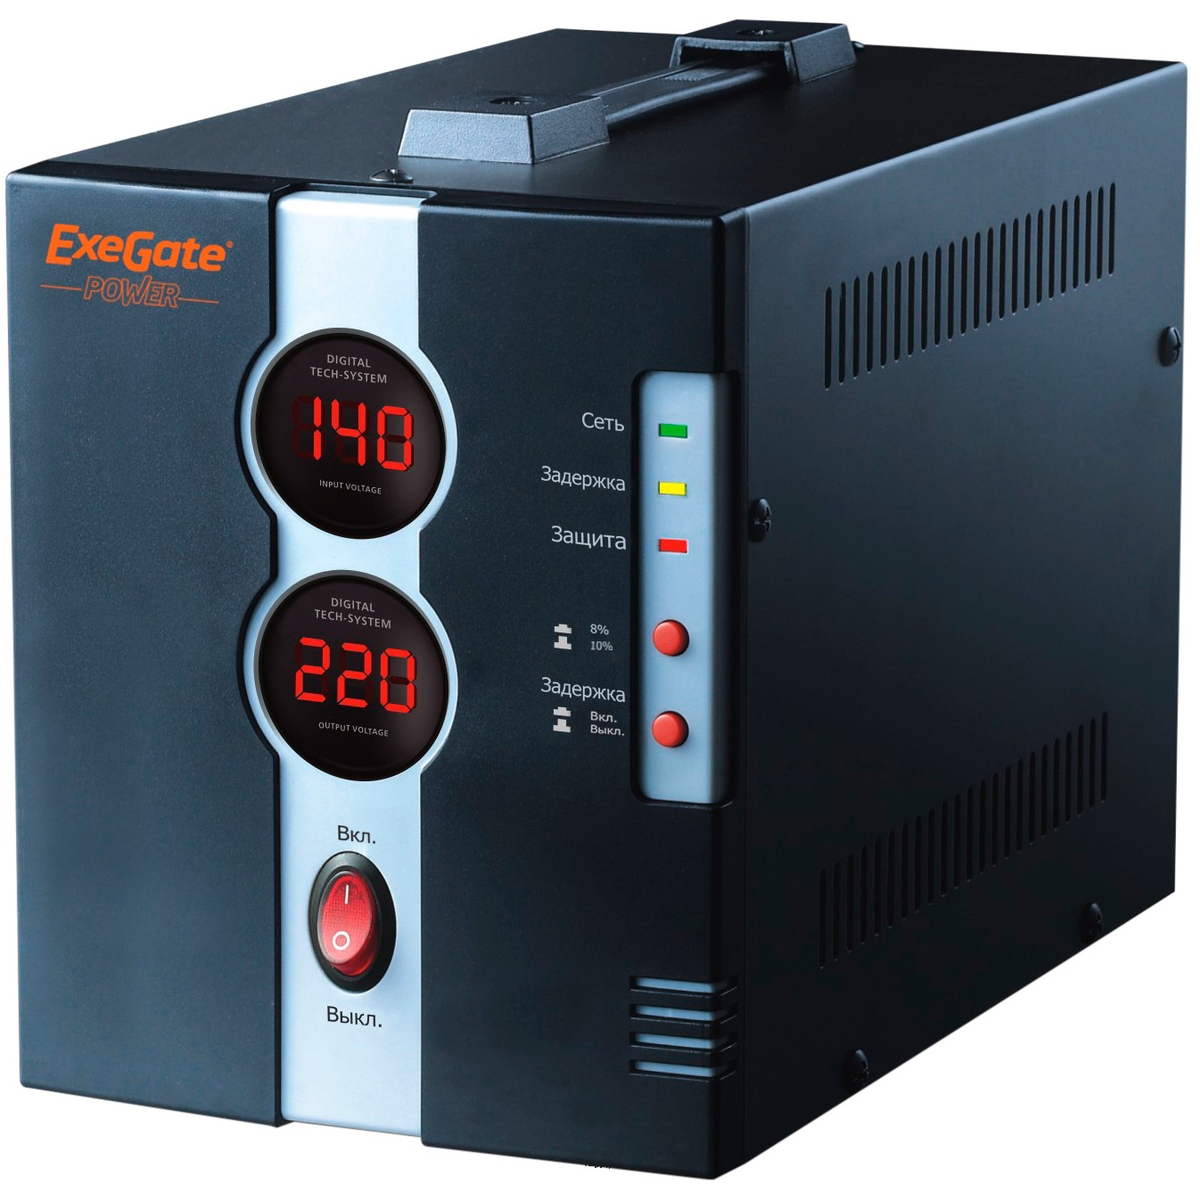  ExeGate Power DCR-1500D